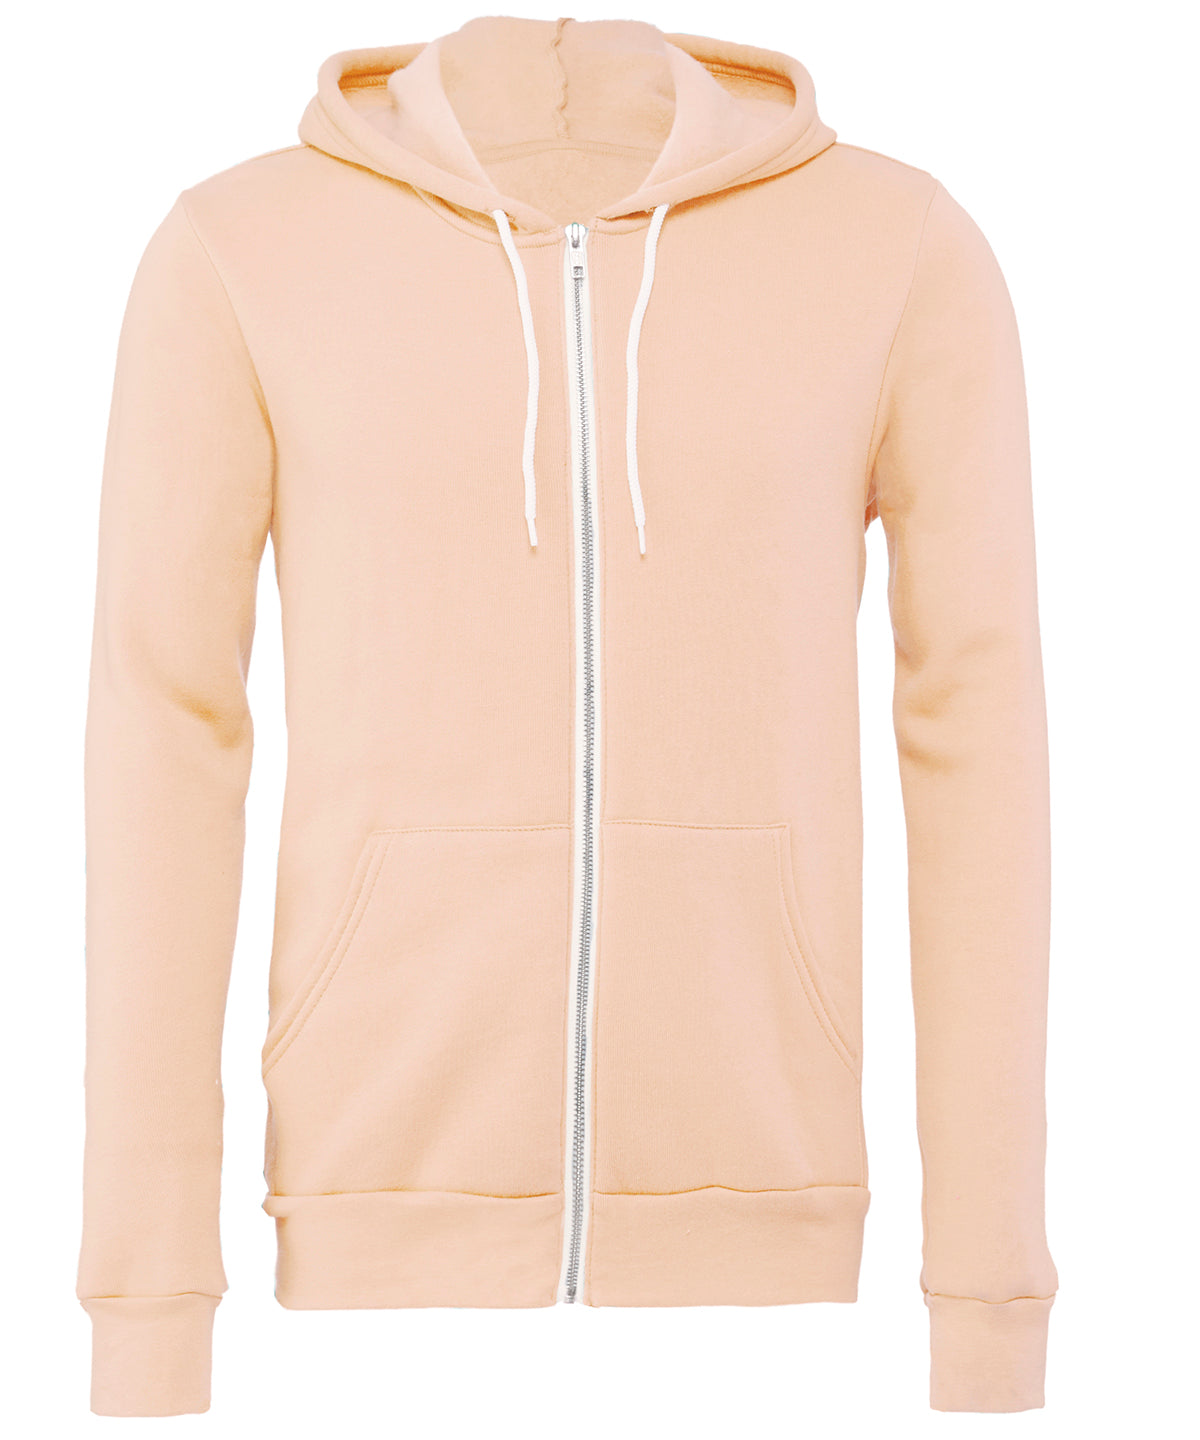 Personalised Hoodies - Mid Grey Bella Canvas Unisex polycotton fleece full-zip hoodie